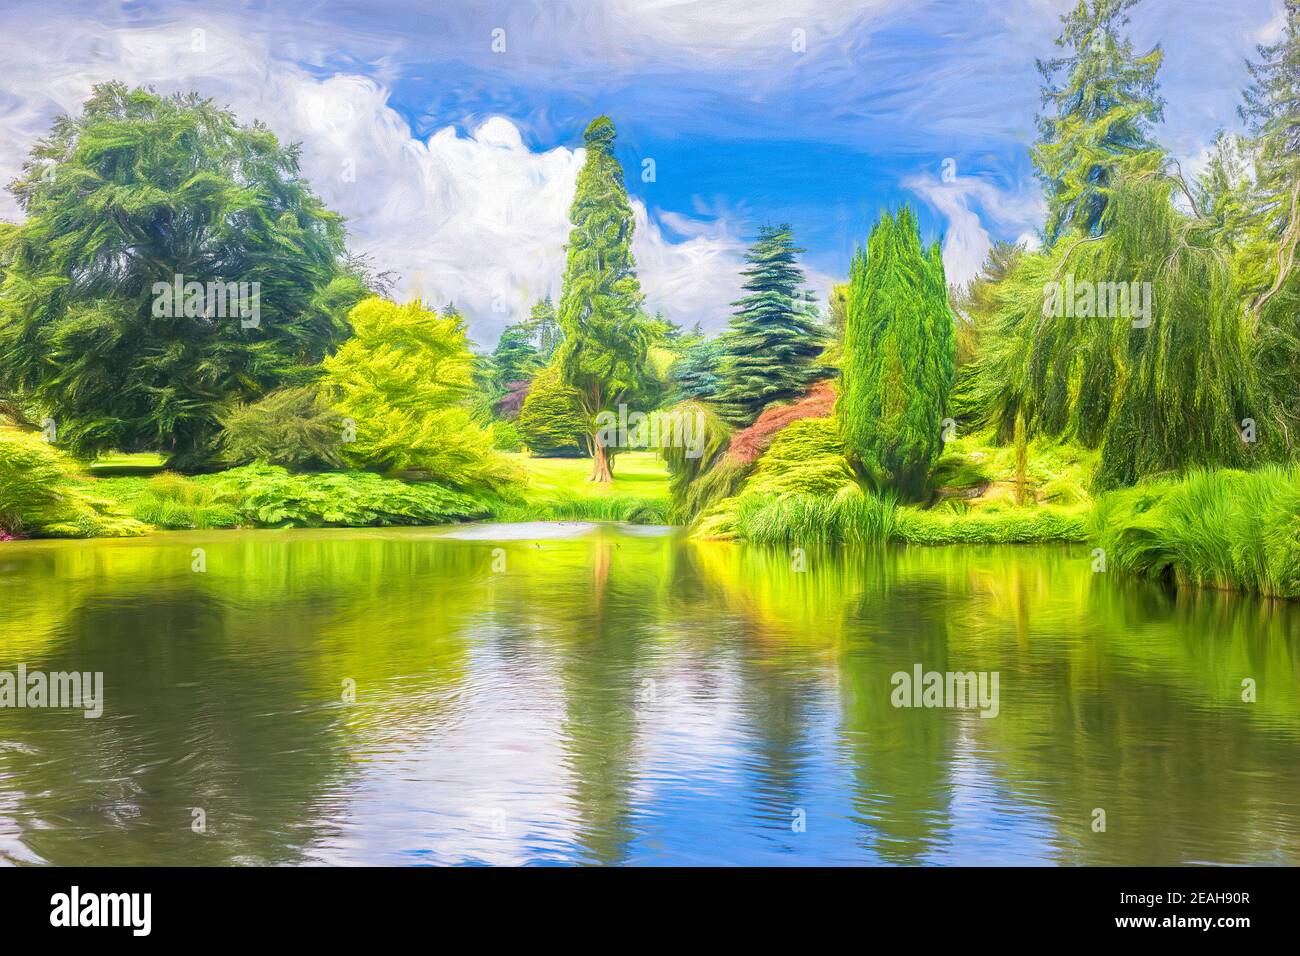 Pintura digital de un jardín, mostrando árboles y arbustos reflejados en un lago. Foto de stock